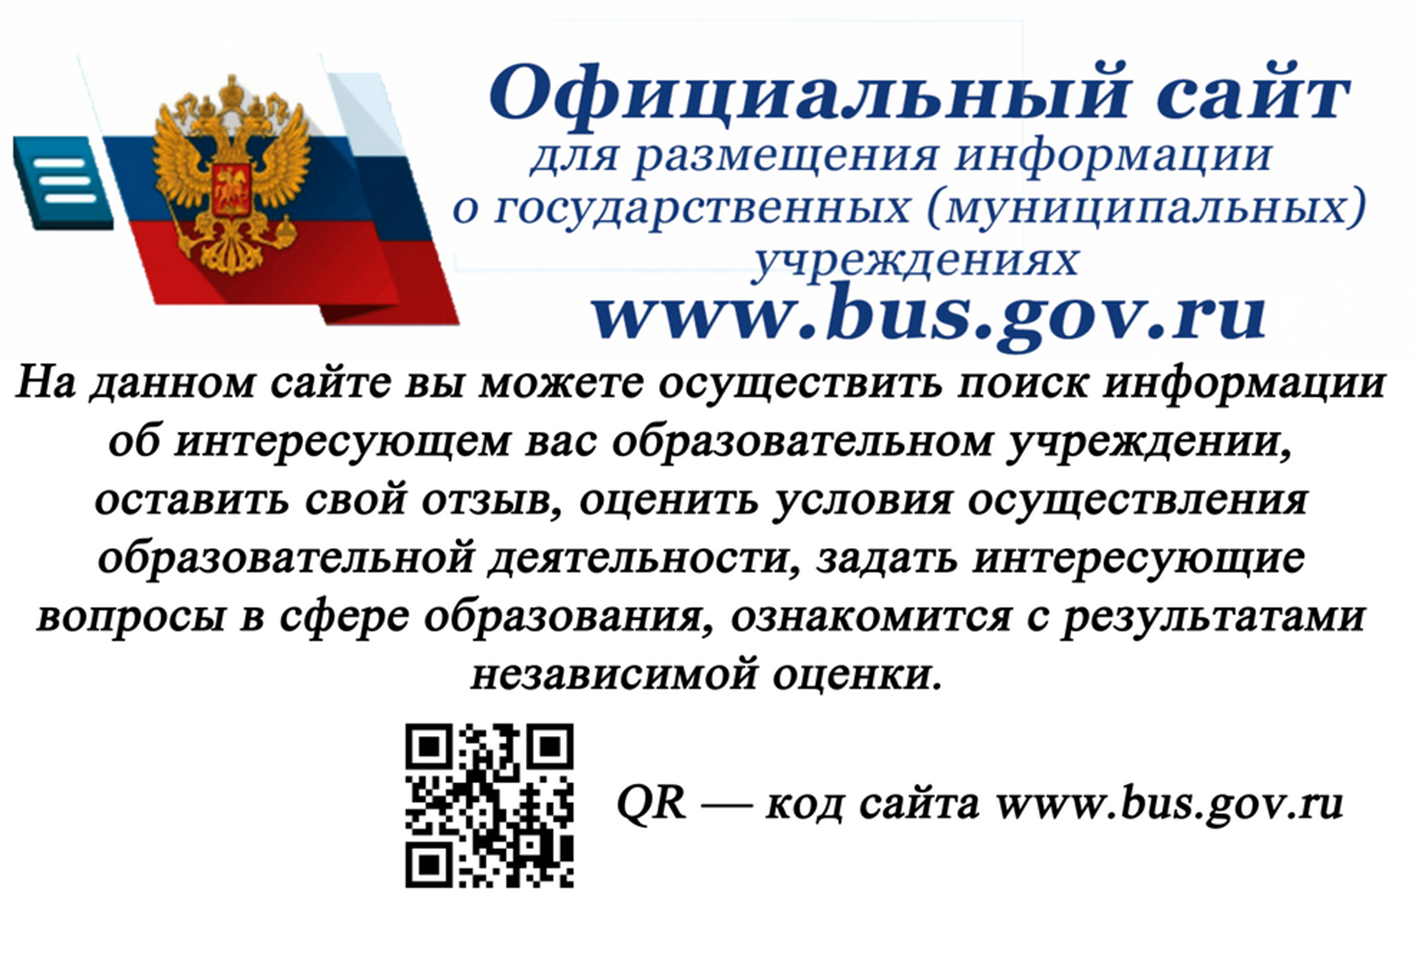 Сведения о государственных муниципальных учреждениях. Bus.gov.ru баннер. Независимая оценка качества образовательных услуг. Https://Bus.gov.ru/. Размещение информации.